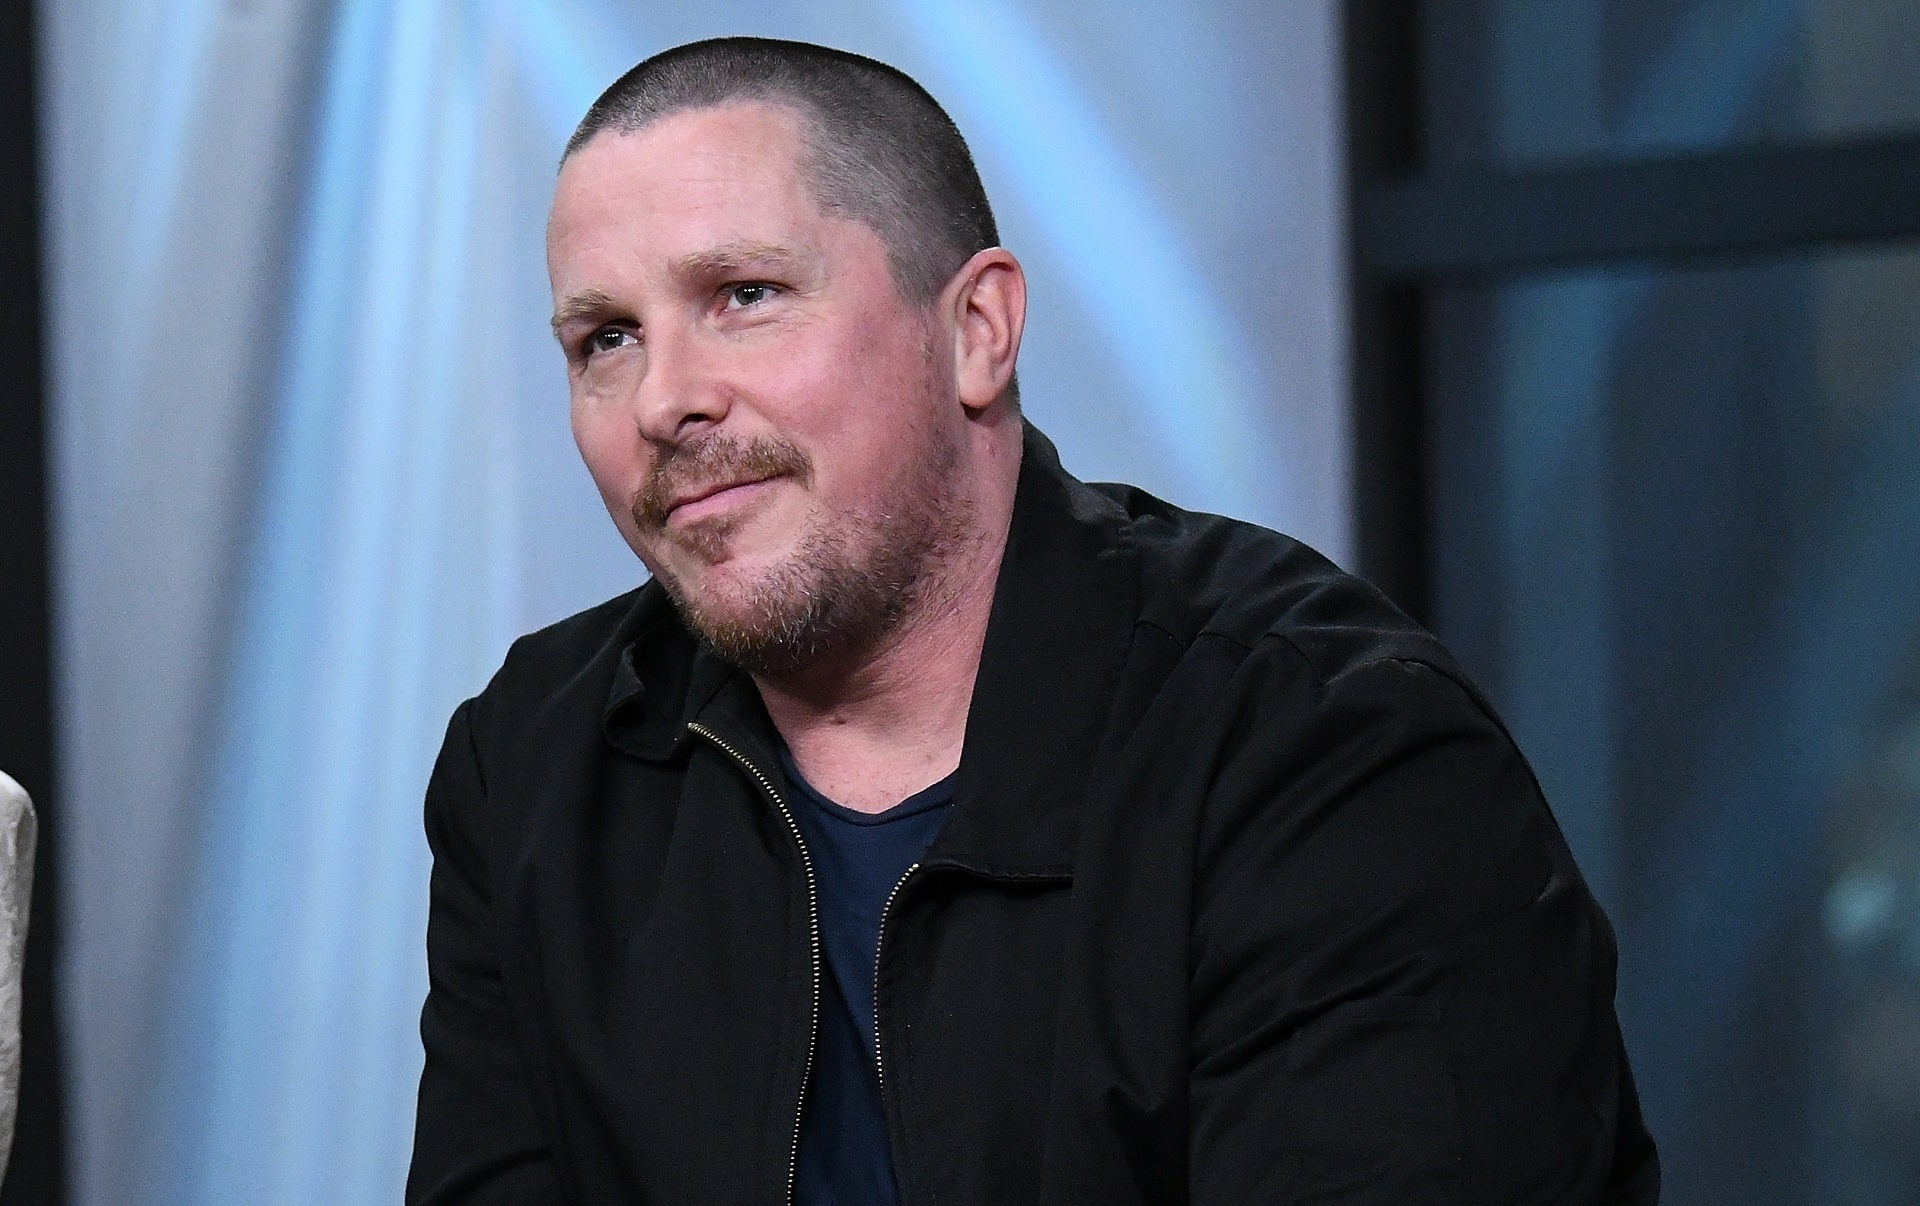 Christian Bale ringrazia Satana per aver ispirato il suo ruolo in Vice